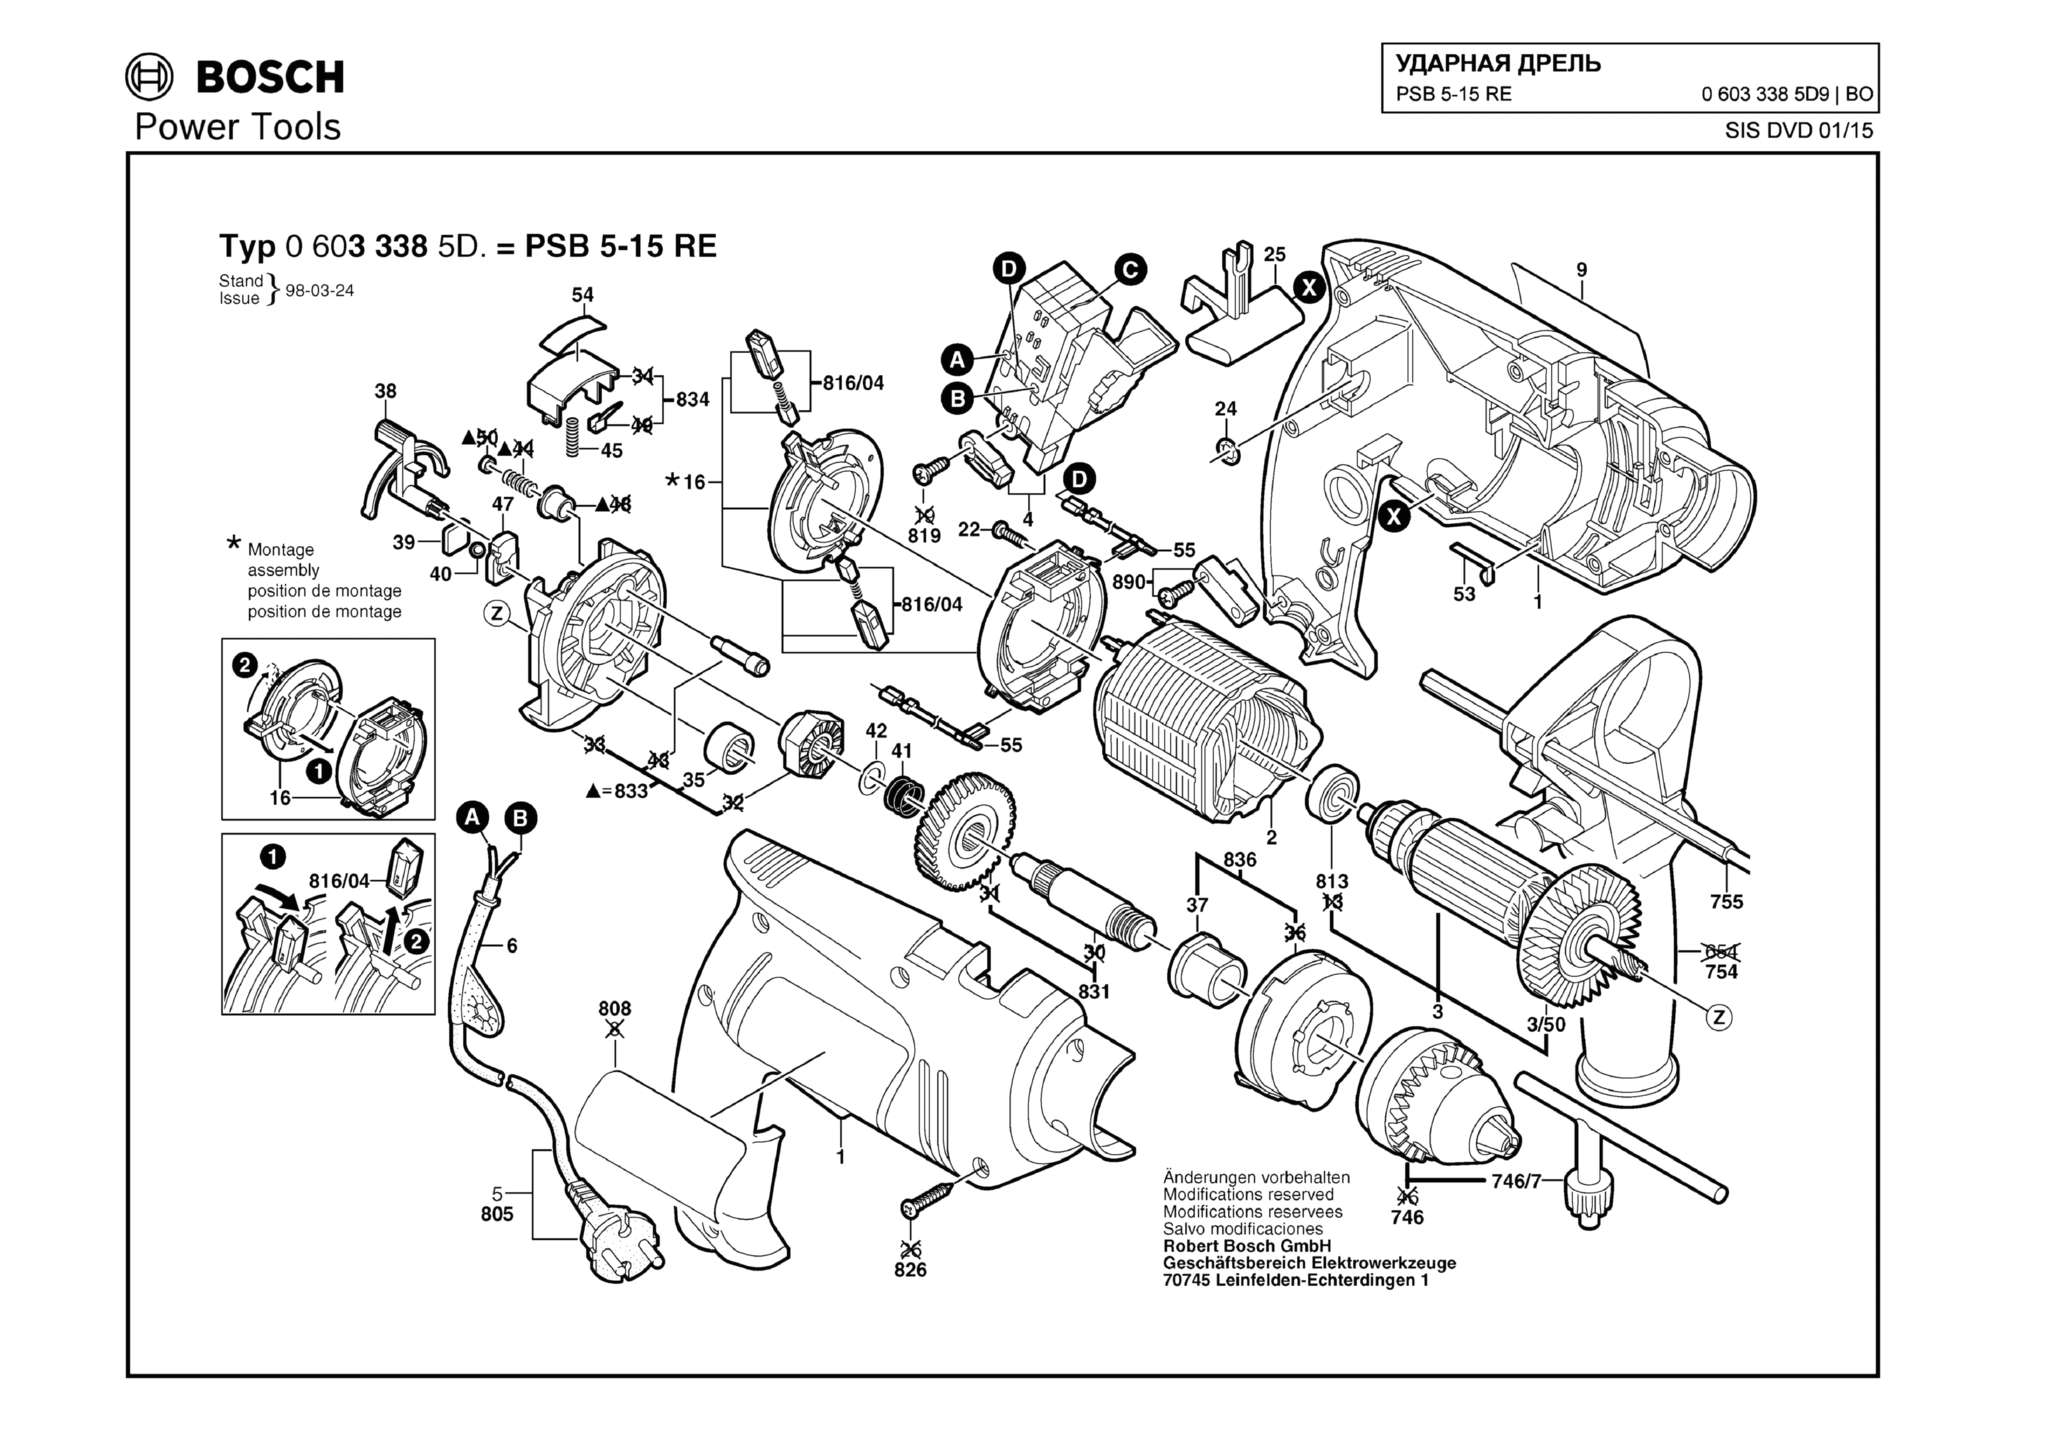 Запчасти, схема и деталировка Bosch PSB 5-15 RE (ТИП 06033385D9)